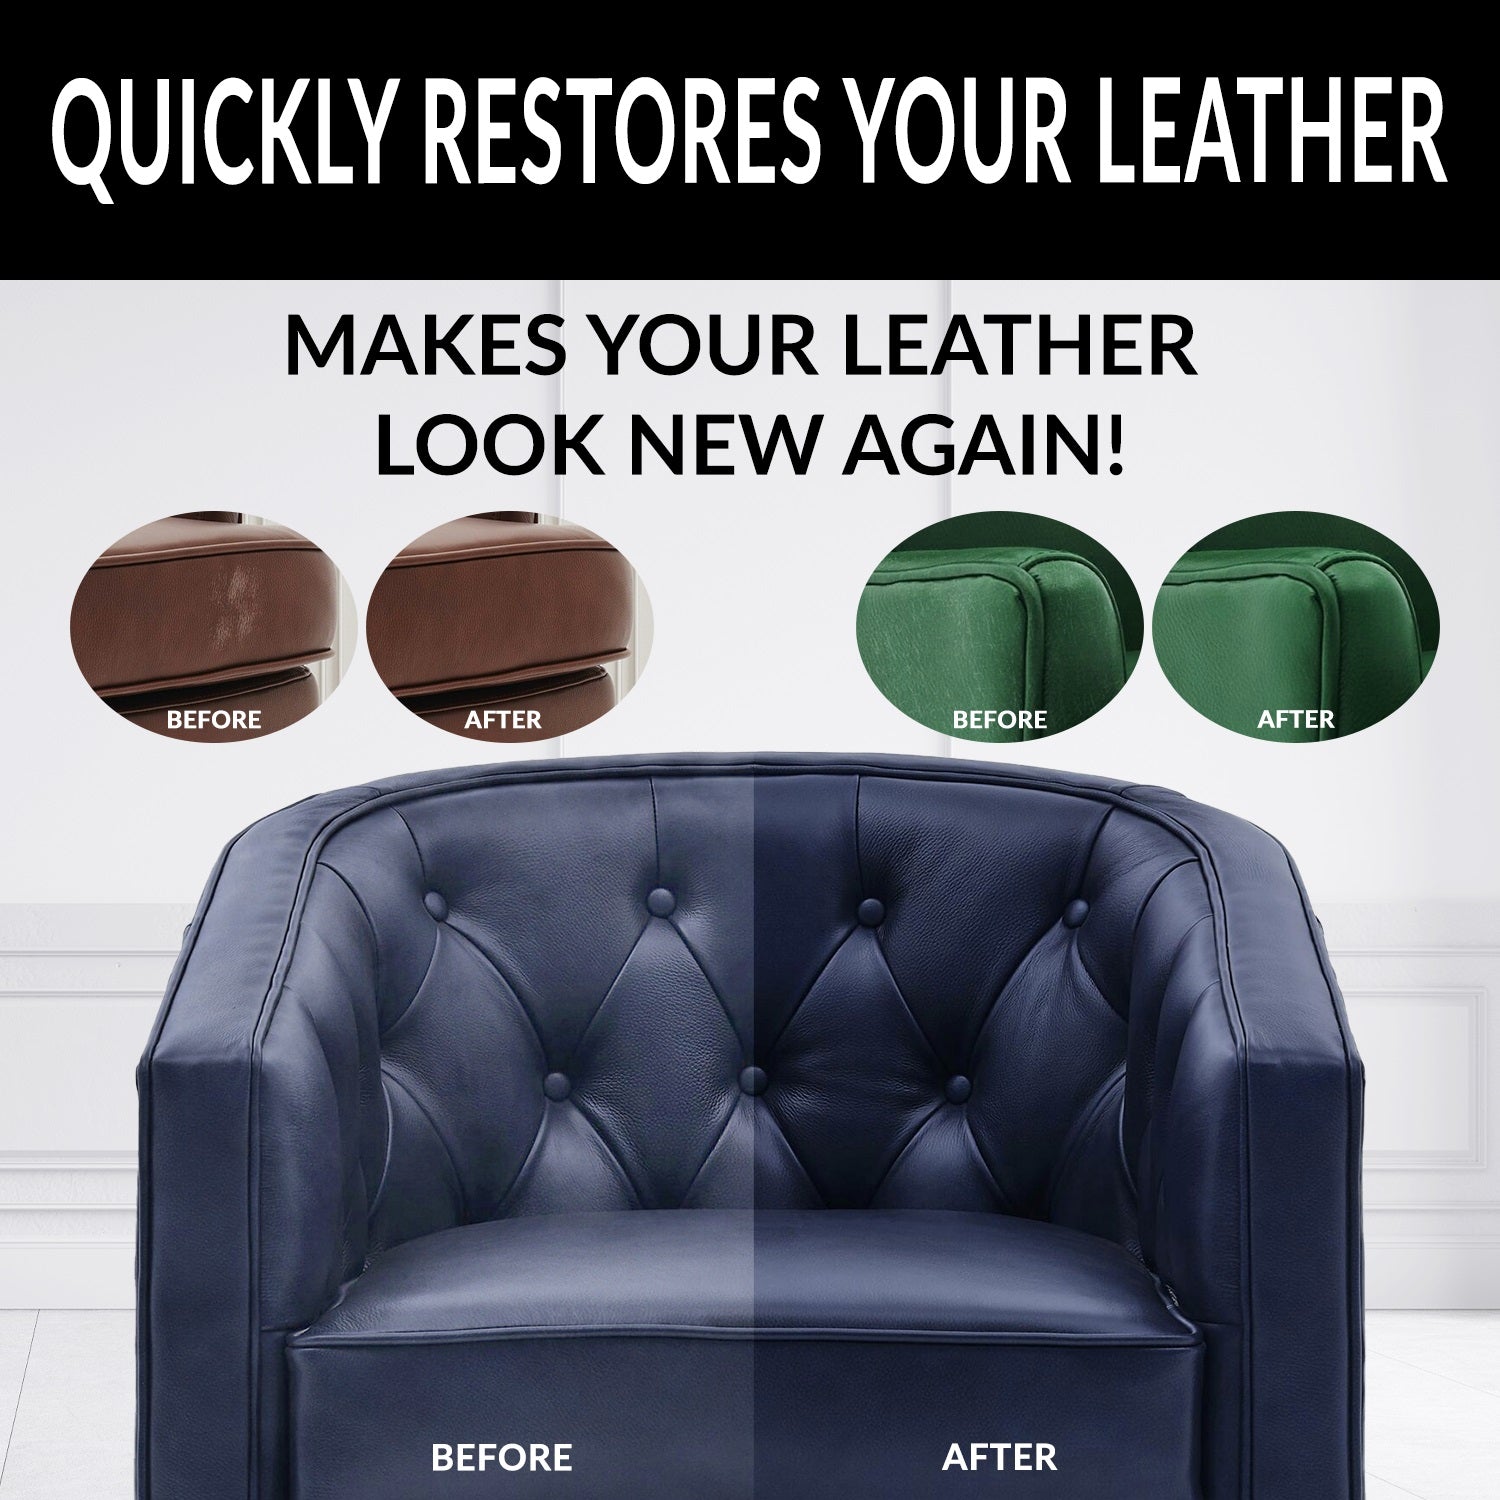 Louis Vuitton Leather Color Repair Kit Marquis Leather paints